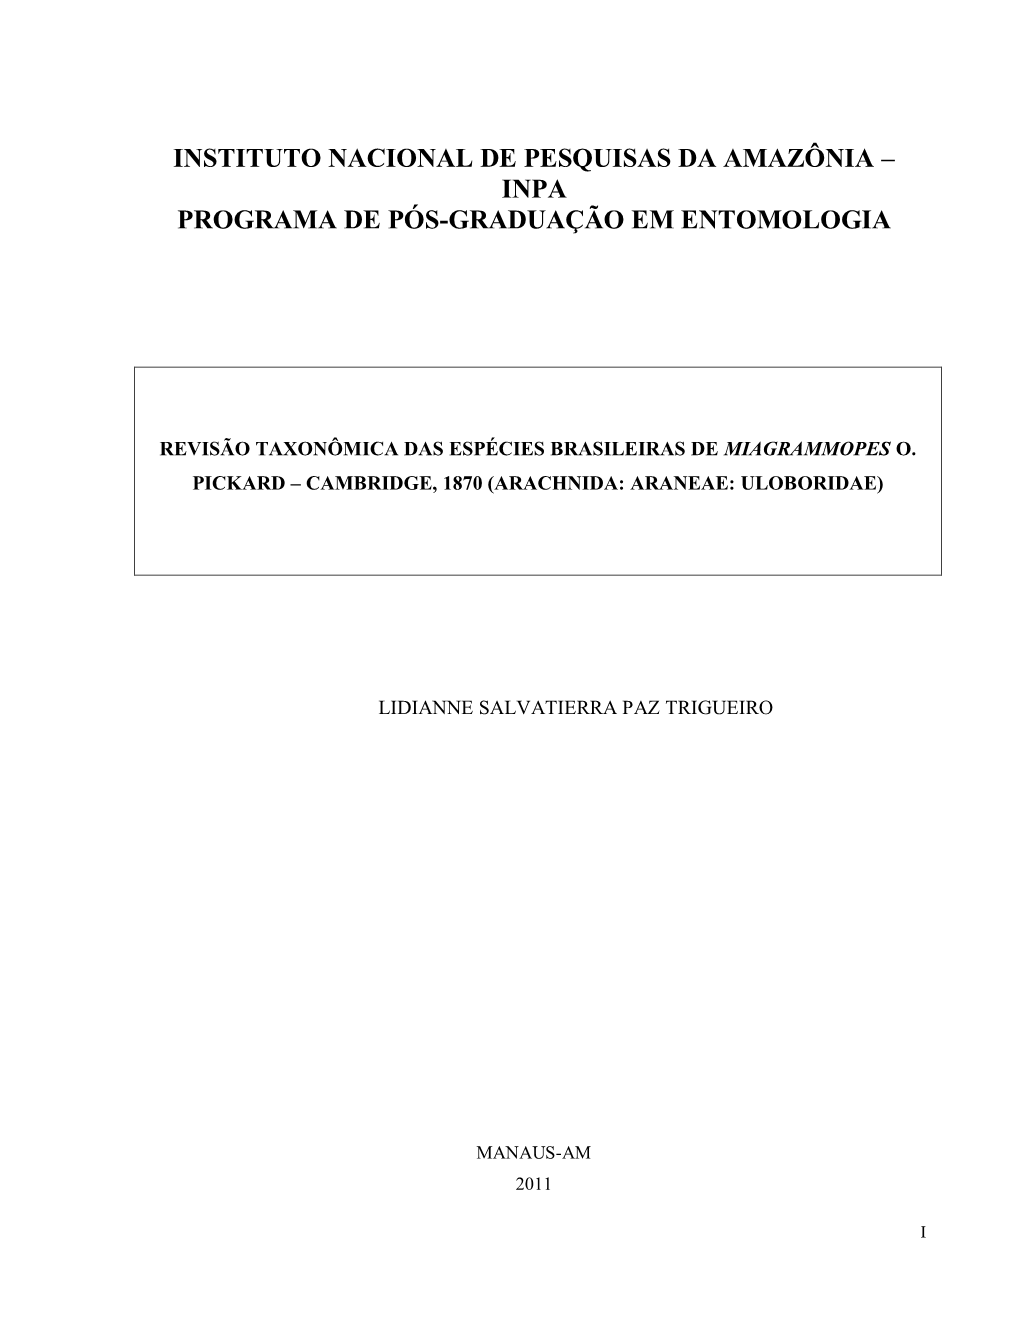 Instituto Nacional De Pesquisas Da Amazônia – Inpa Programa De Pós-Graduação Em Entomologia